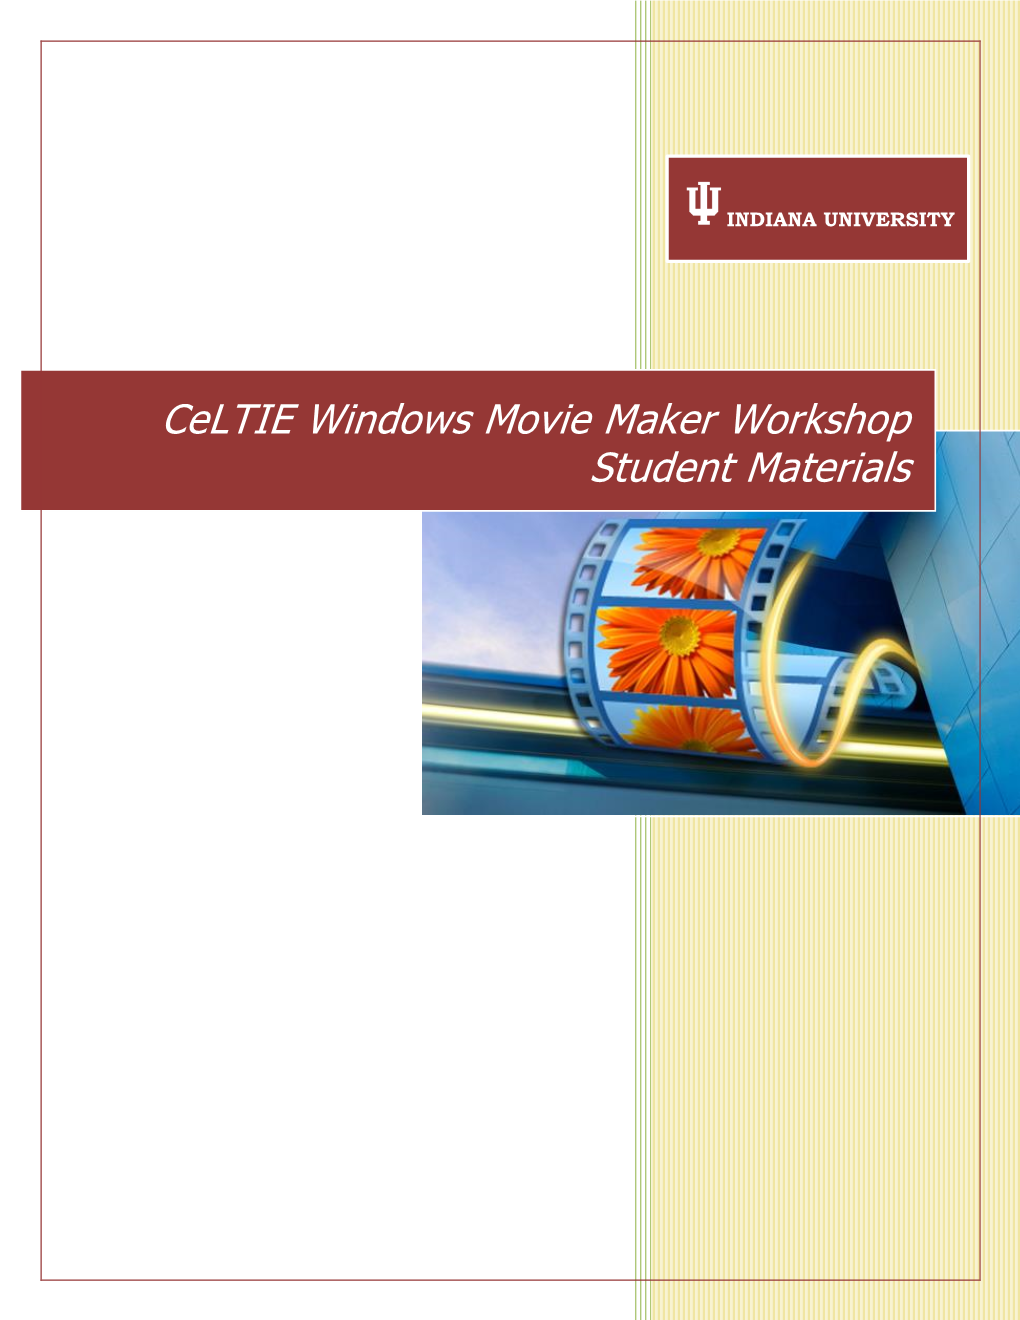 Celtie Windows Movie Maker Workshop Student Materials